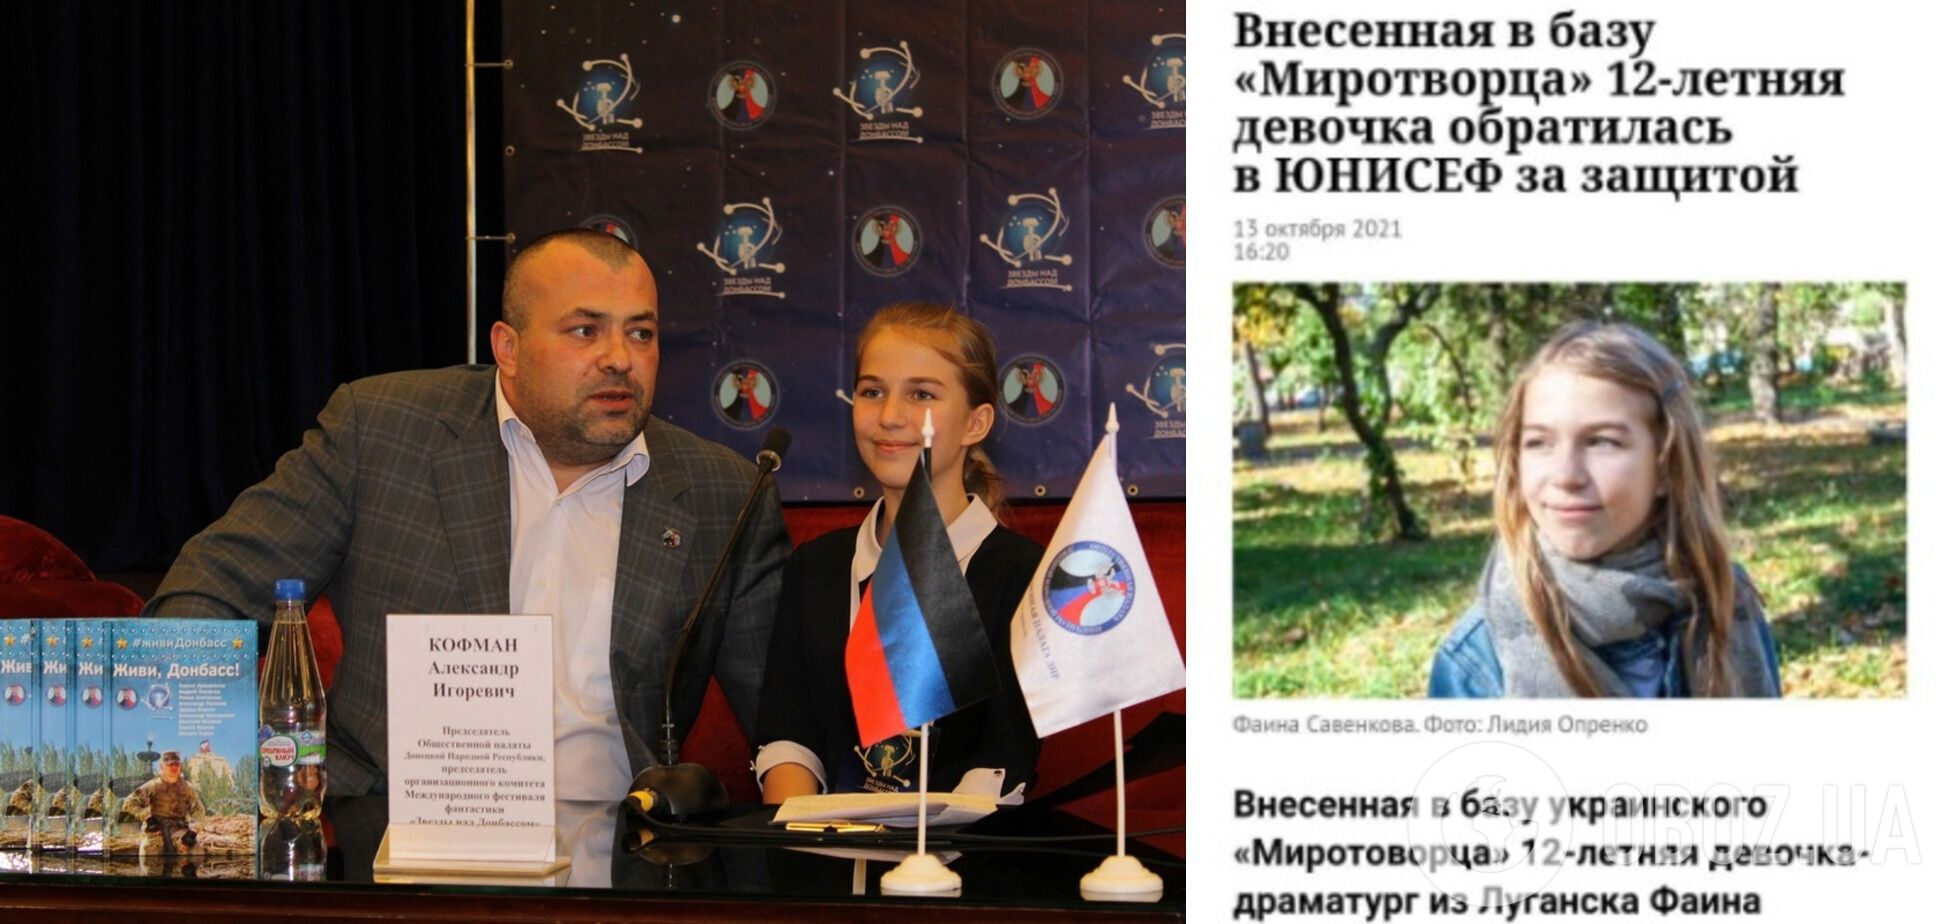 Россияне использовали Савенкову в своей пропаганде против Украины